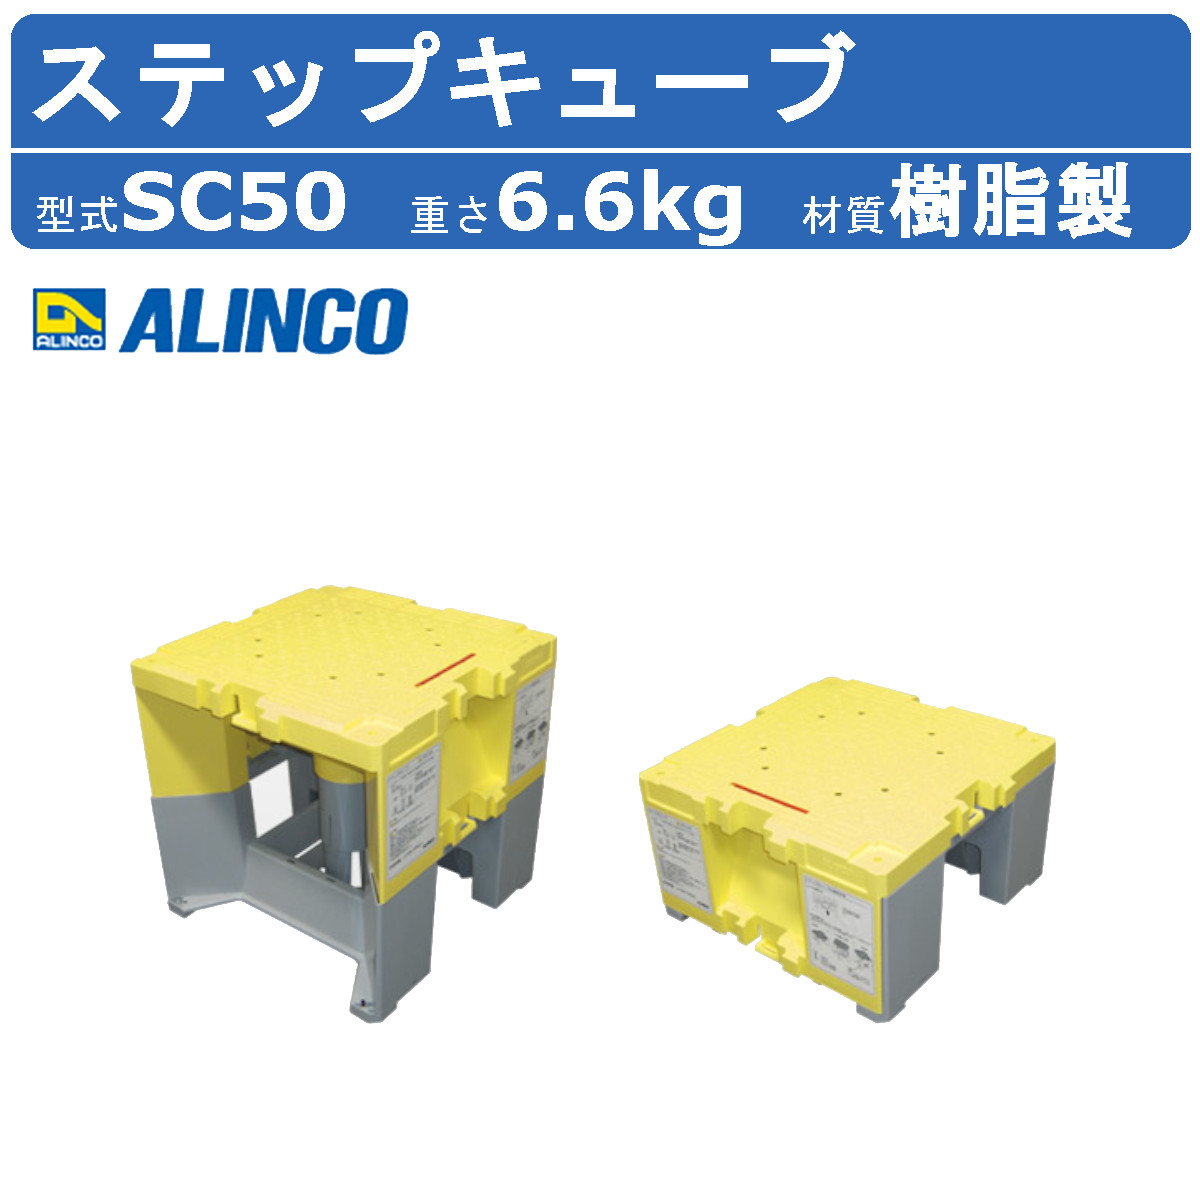 alinco アルインコ ステップキューブ SC50 作業台 オリオン 連結可能 可変式 家庭用 業務用 踏み台 ステップ台 昇降台 現場 工事  コンパクト 軽量 樹脂製